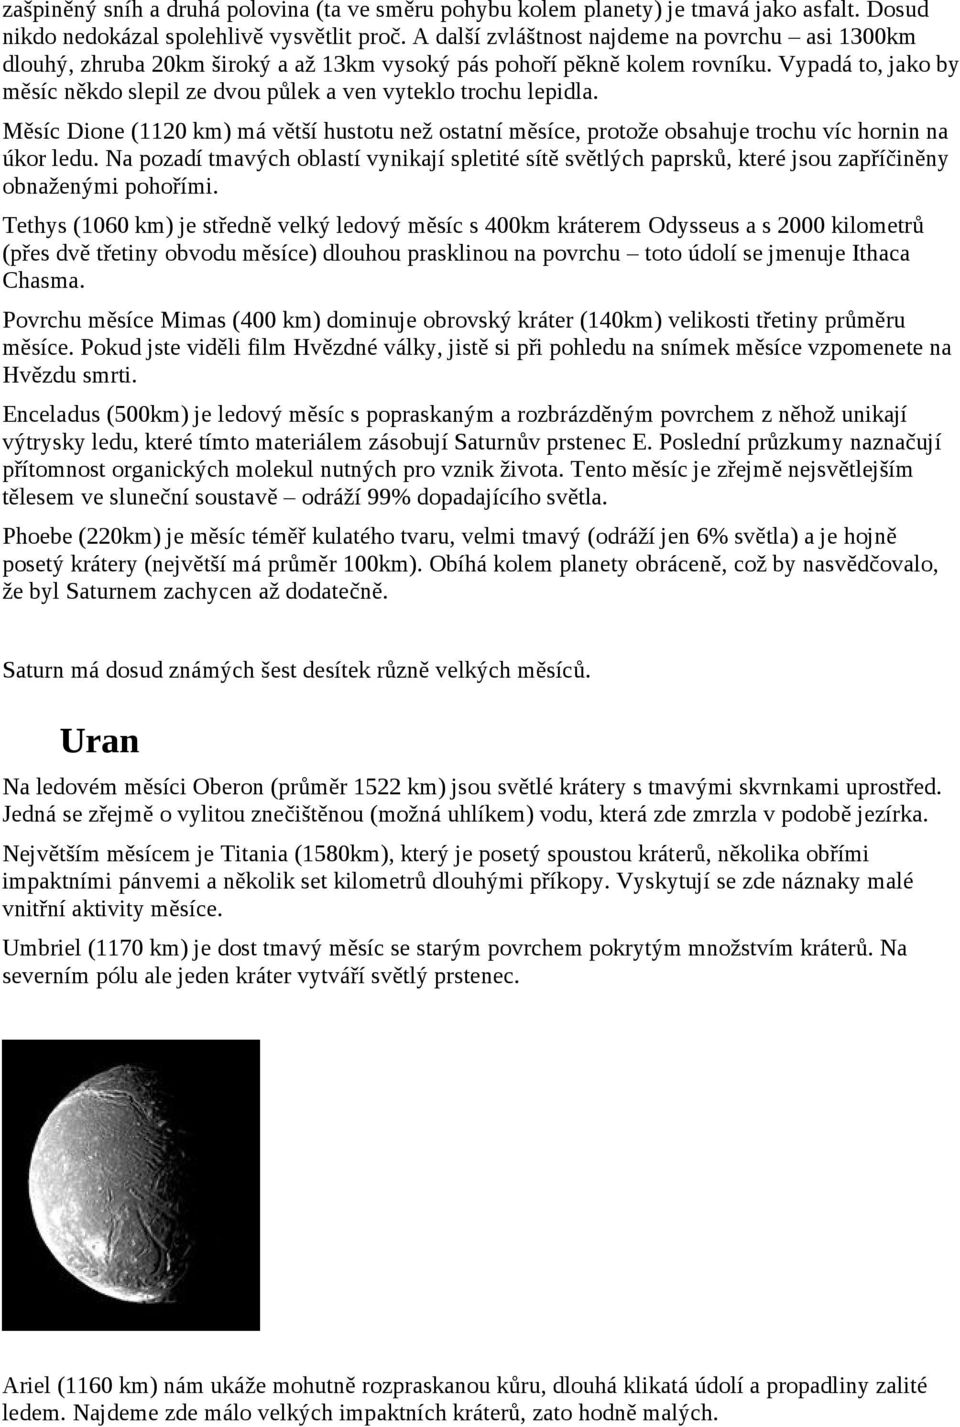 Vypadá to, jako by měsíc někdo slepil ze dvou půlek a ven vyteklo trochu lepidla. Měsíc Dione (1120 km) má větší hustotu než ostatní měsíce, protože obsahuje trochu víc hornin na úkor ledu.